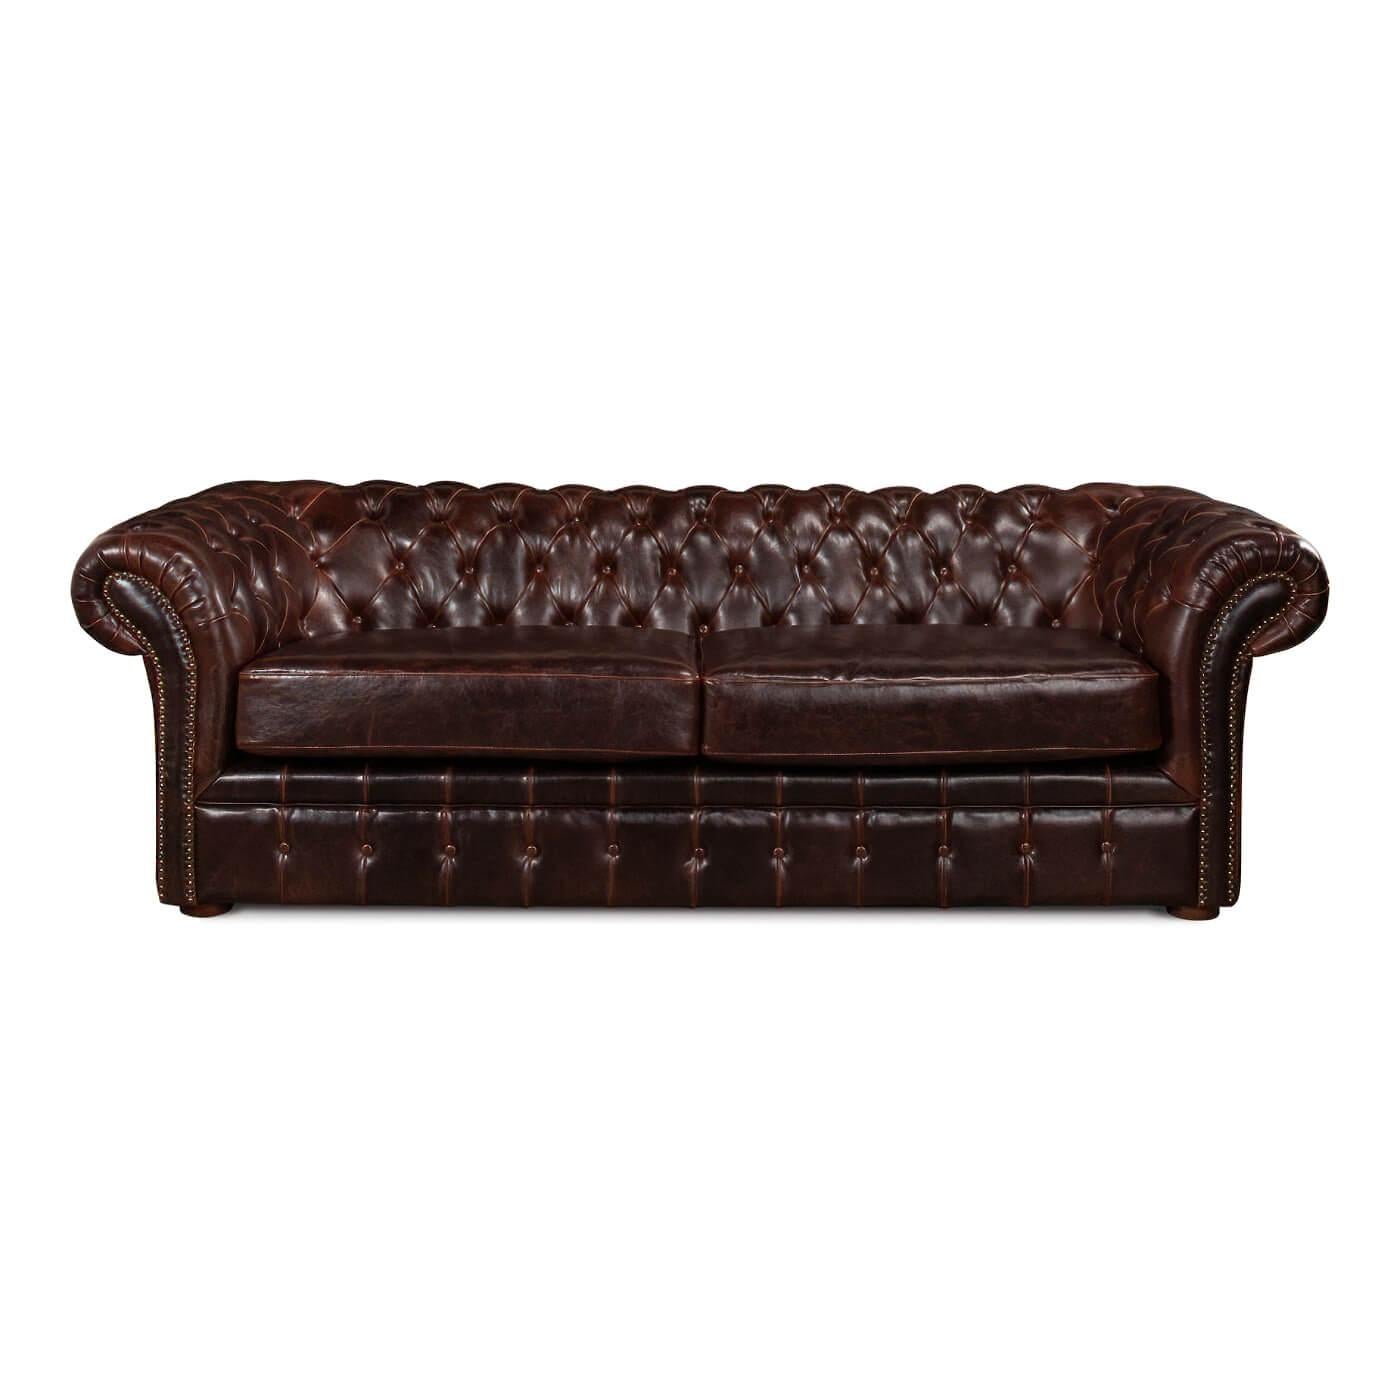 Canapé Chesterfield en cuir tufté, recouvert d'un riche cuir marron traditionnel. Une version du design anglais traditionnel du 19ème siècle avec des accoudoirs et un dossier roulés et touffus et une assise à coussin fendu.

Dimensions : 91